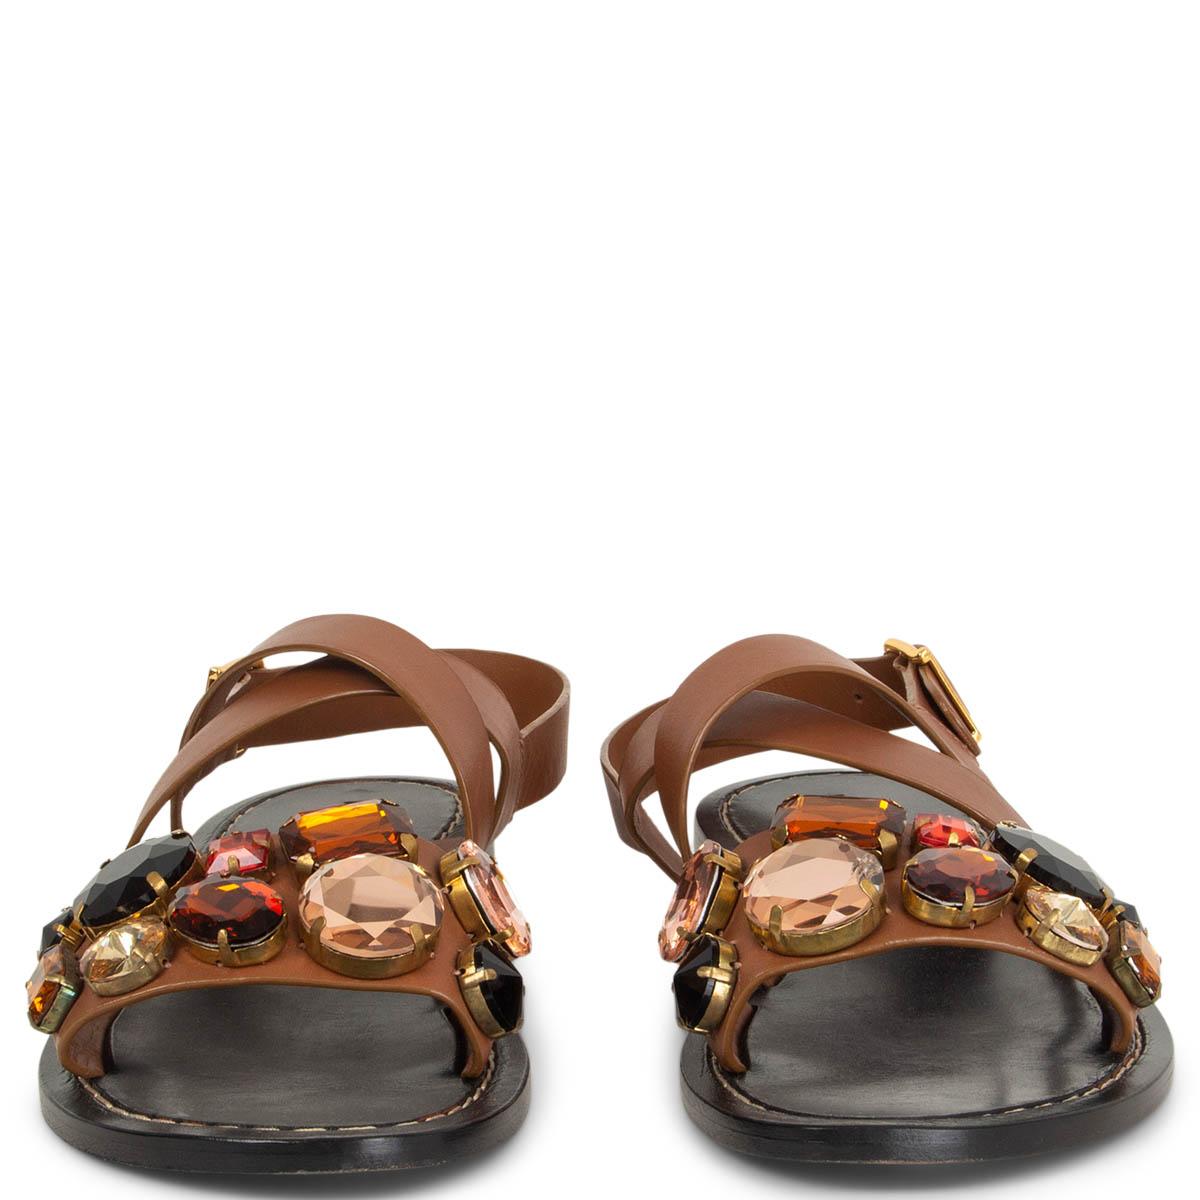 sandales à lacets 100% authentiques de Marni en cuir marron, ornées de cristaux surdimensionnés. Ils ont été portés une ou deux fois et sont en excellent état. Livré avec un sac à poussière. 

Mesures
Taille imprimée	37
Taille des